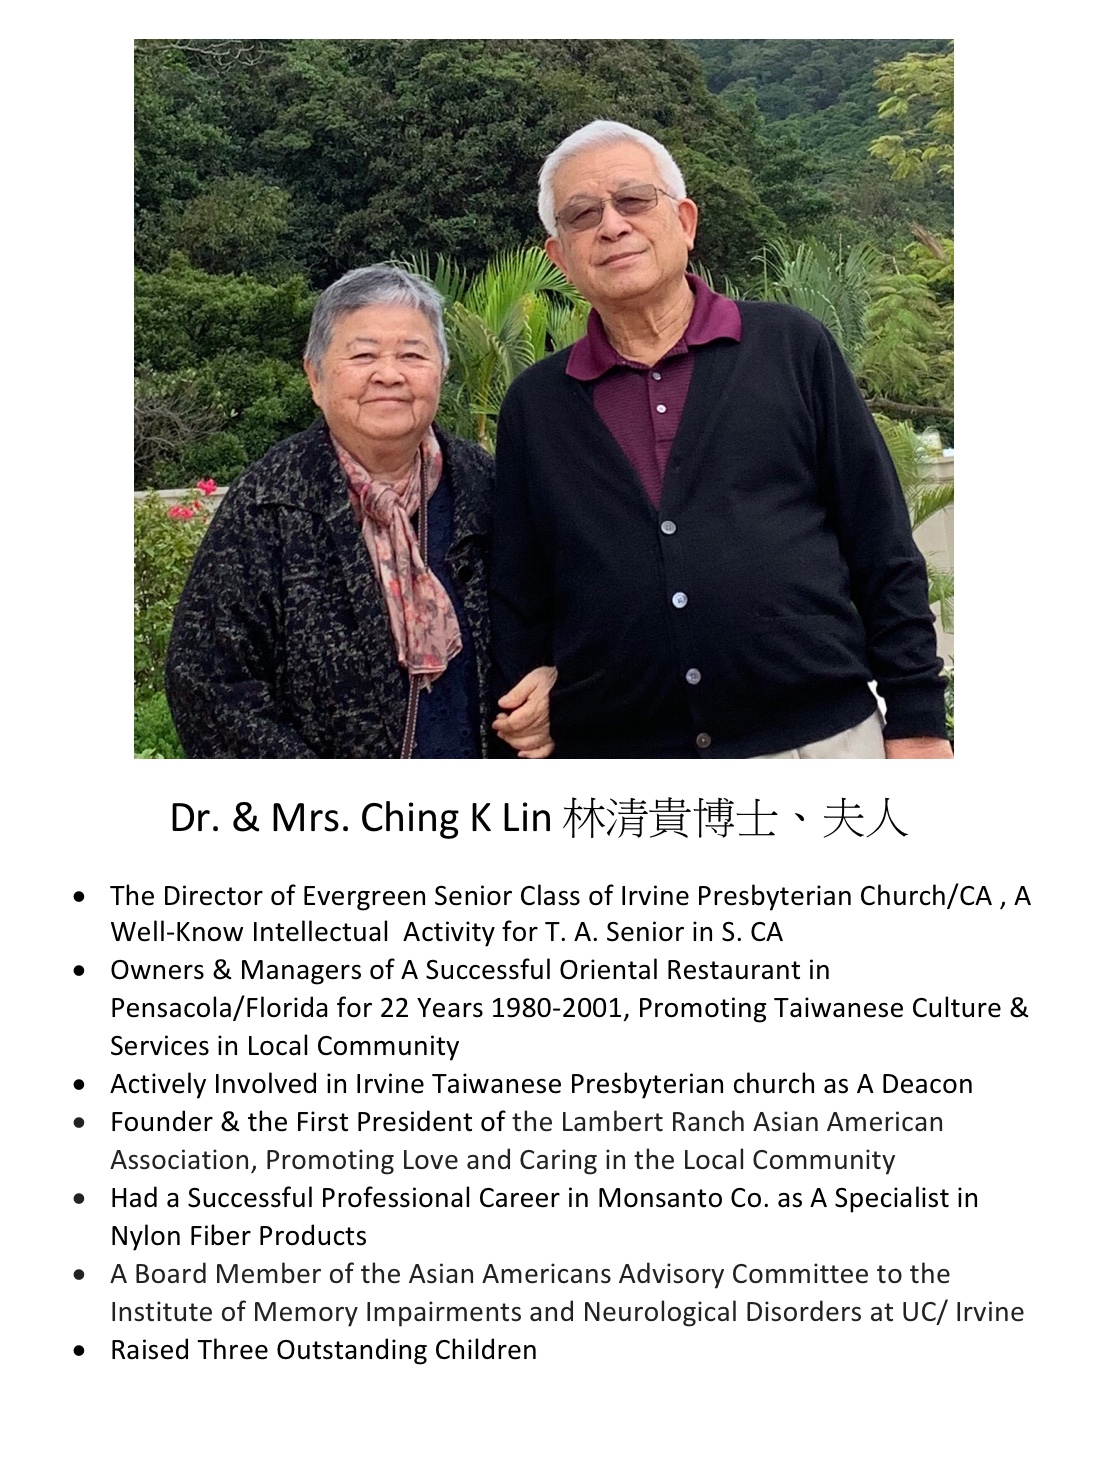 248. Dr. & Mrs. Ching K Lin 林清貴博士、夫人